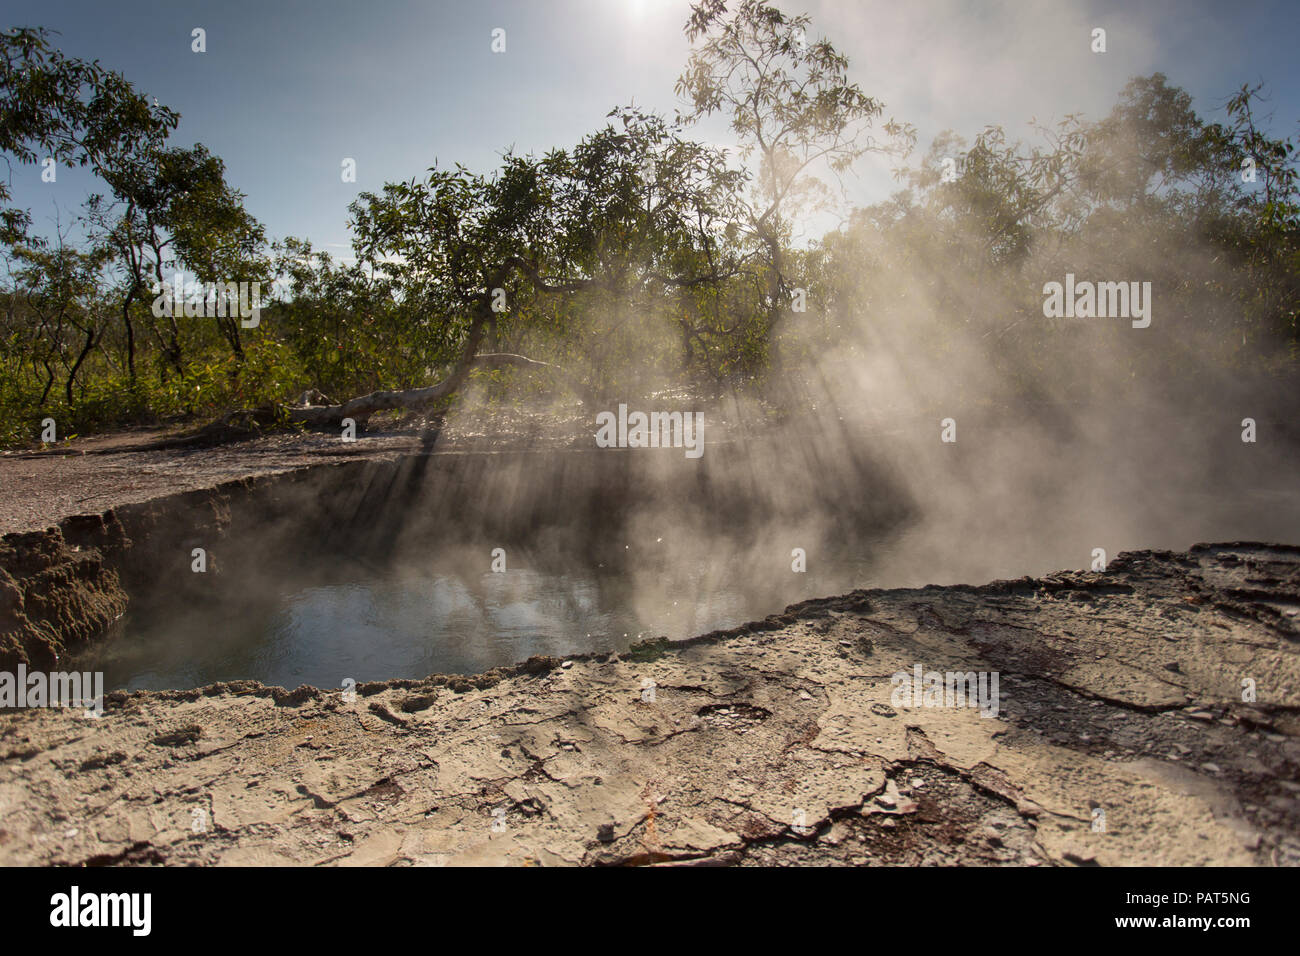 Papua Neu Guinea, Dei Dei heißen Quellen, Fergusson Island. Dampf steigt durch Bäume aus heißen Quellen unten. Stockfoto